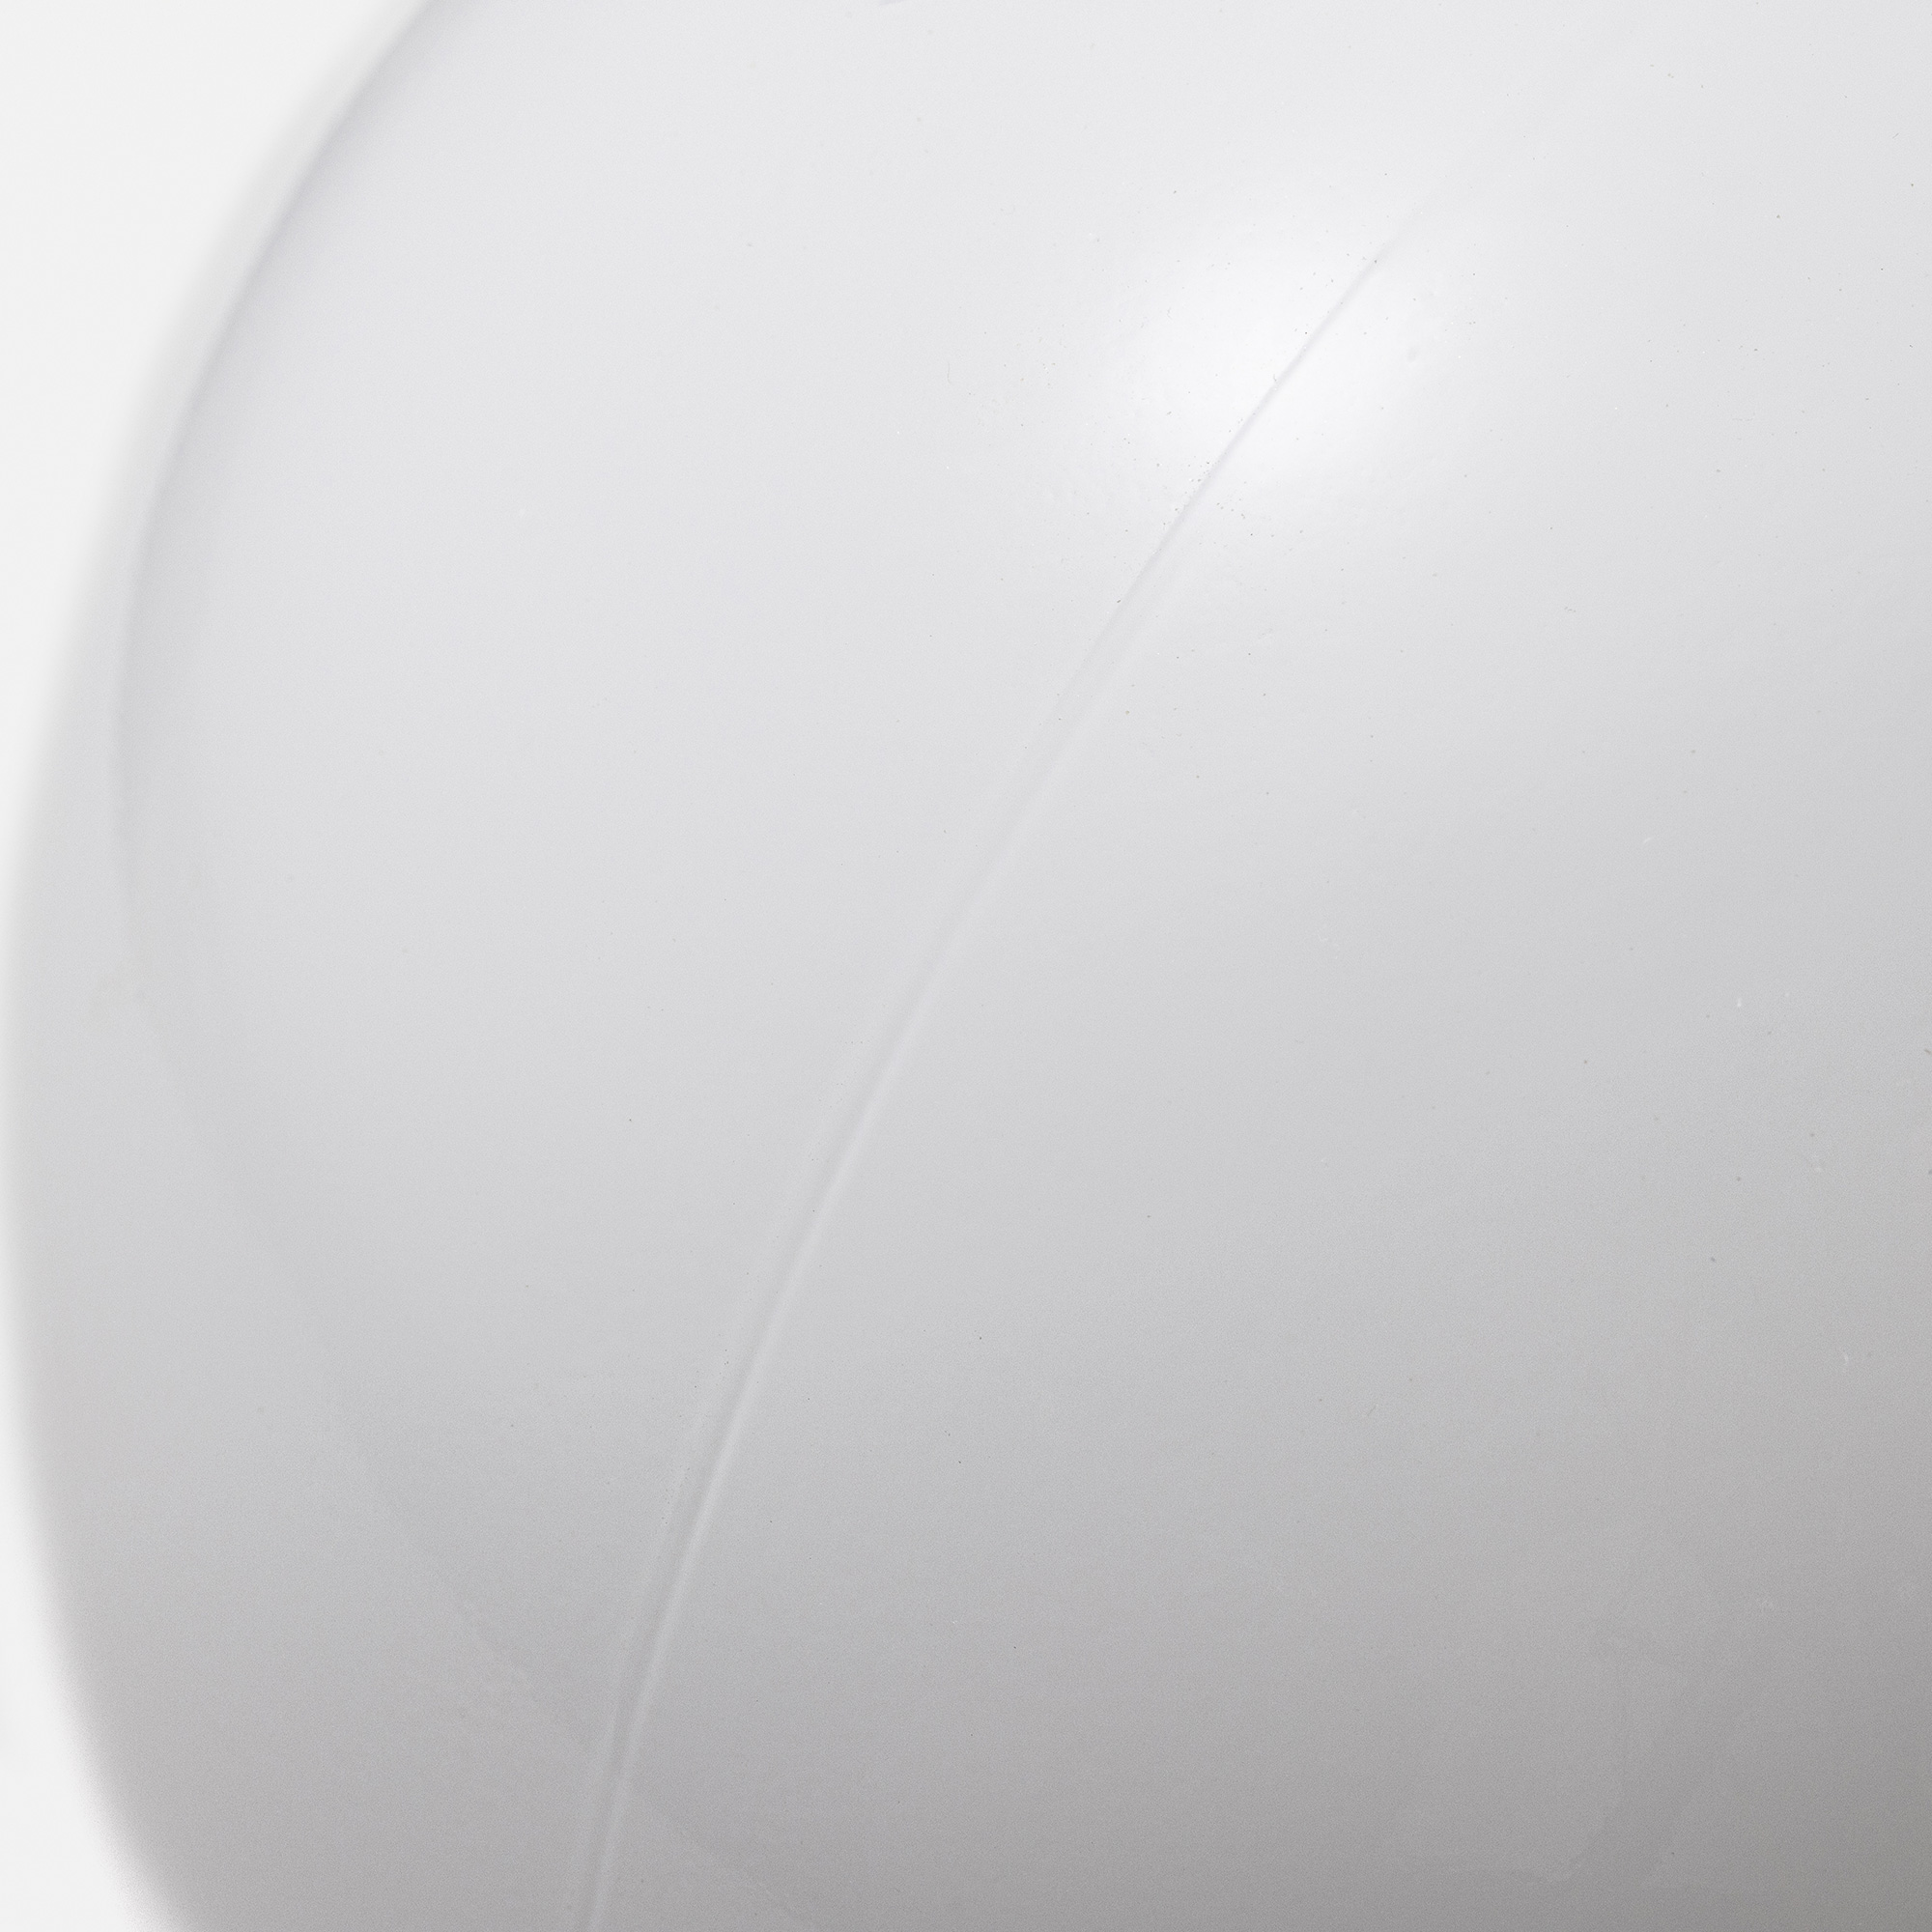 メタルラウンジライト 真鍮 乳白ボール（直付） LT-BR018-06-G141 ガラスグローブには成型上、縦か横に薄く接合時のラインができます